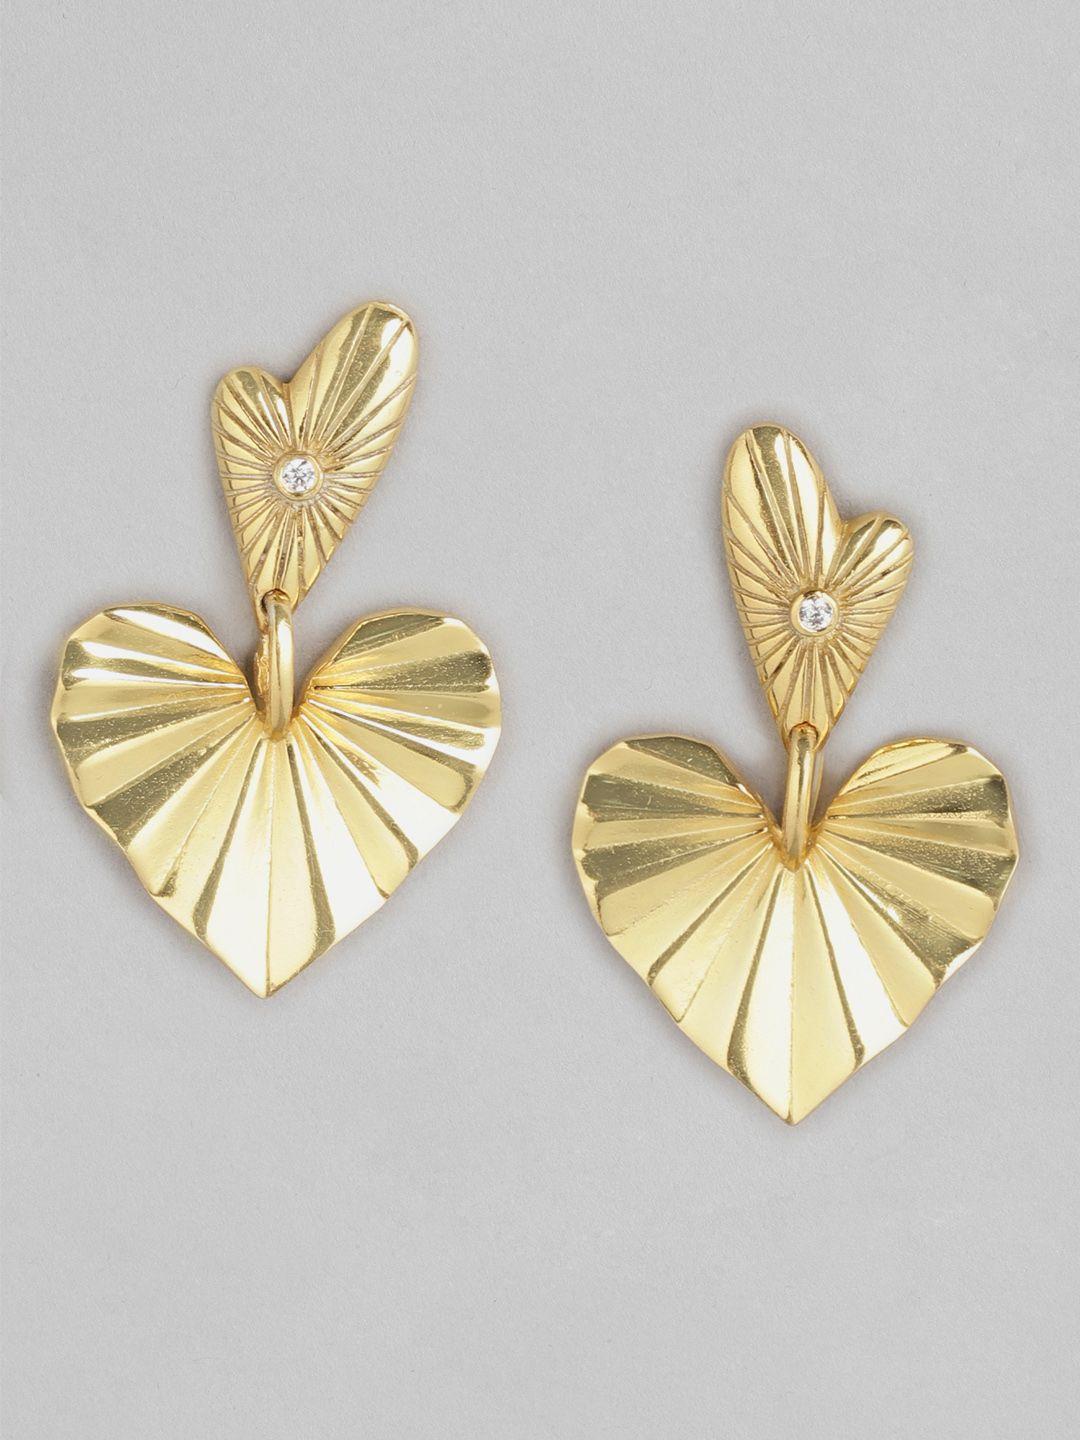 carlton london heart shaped drop earrings